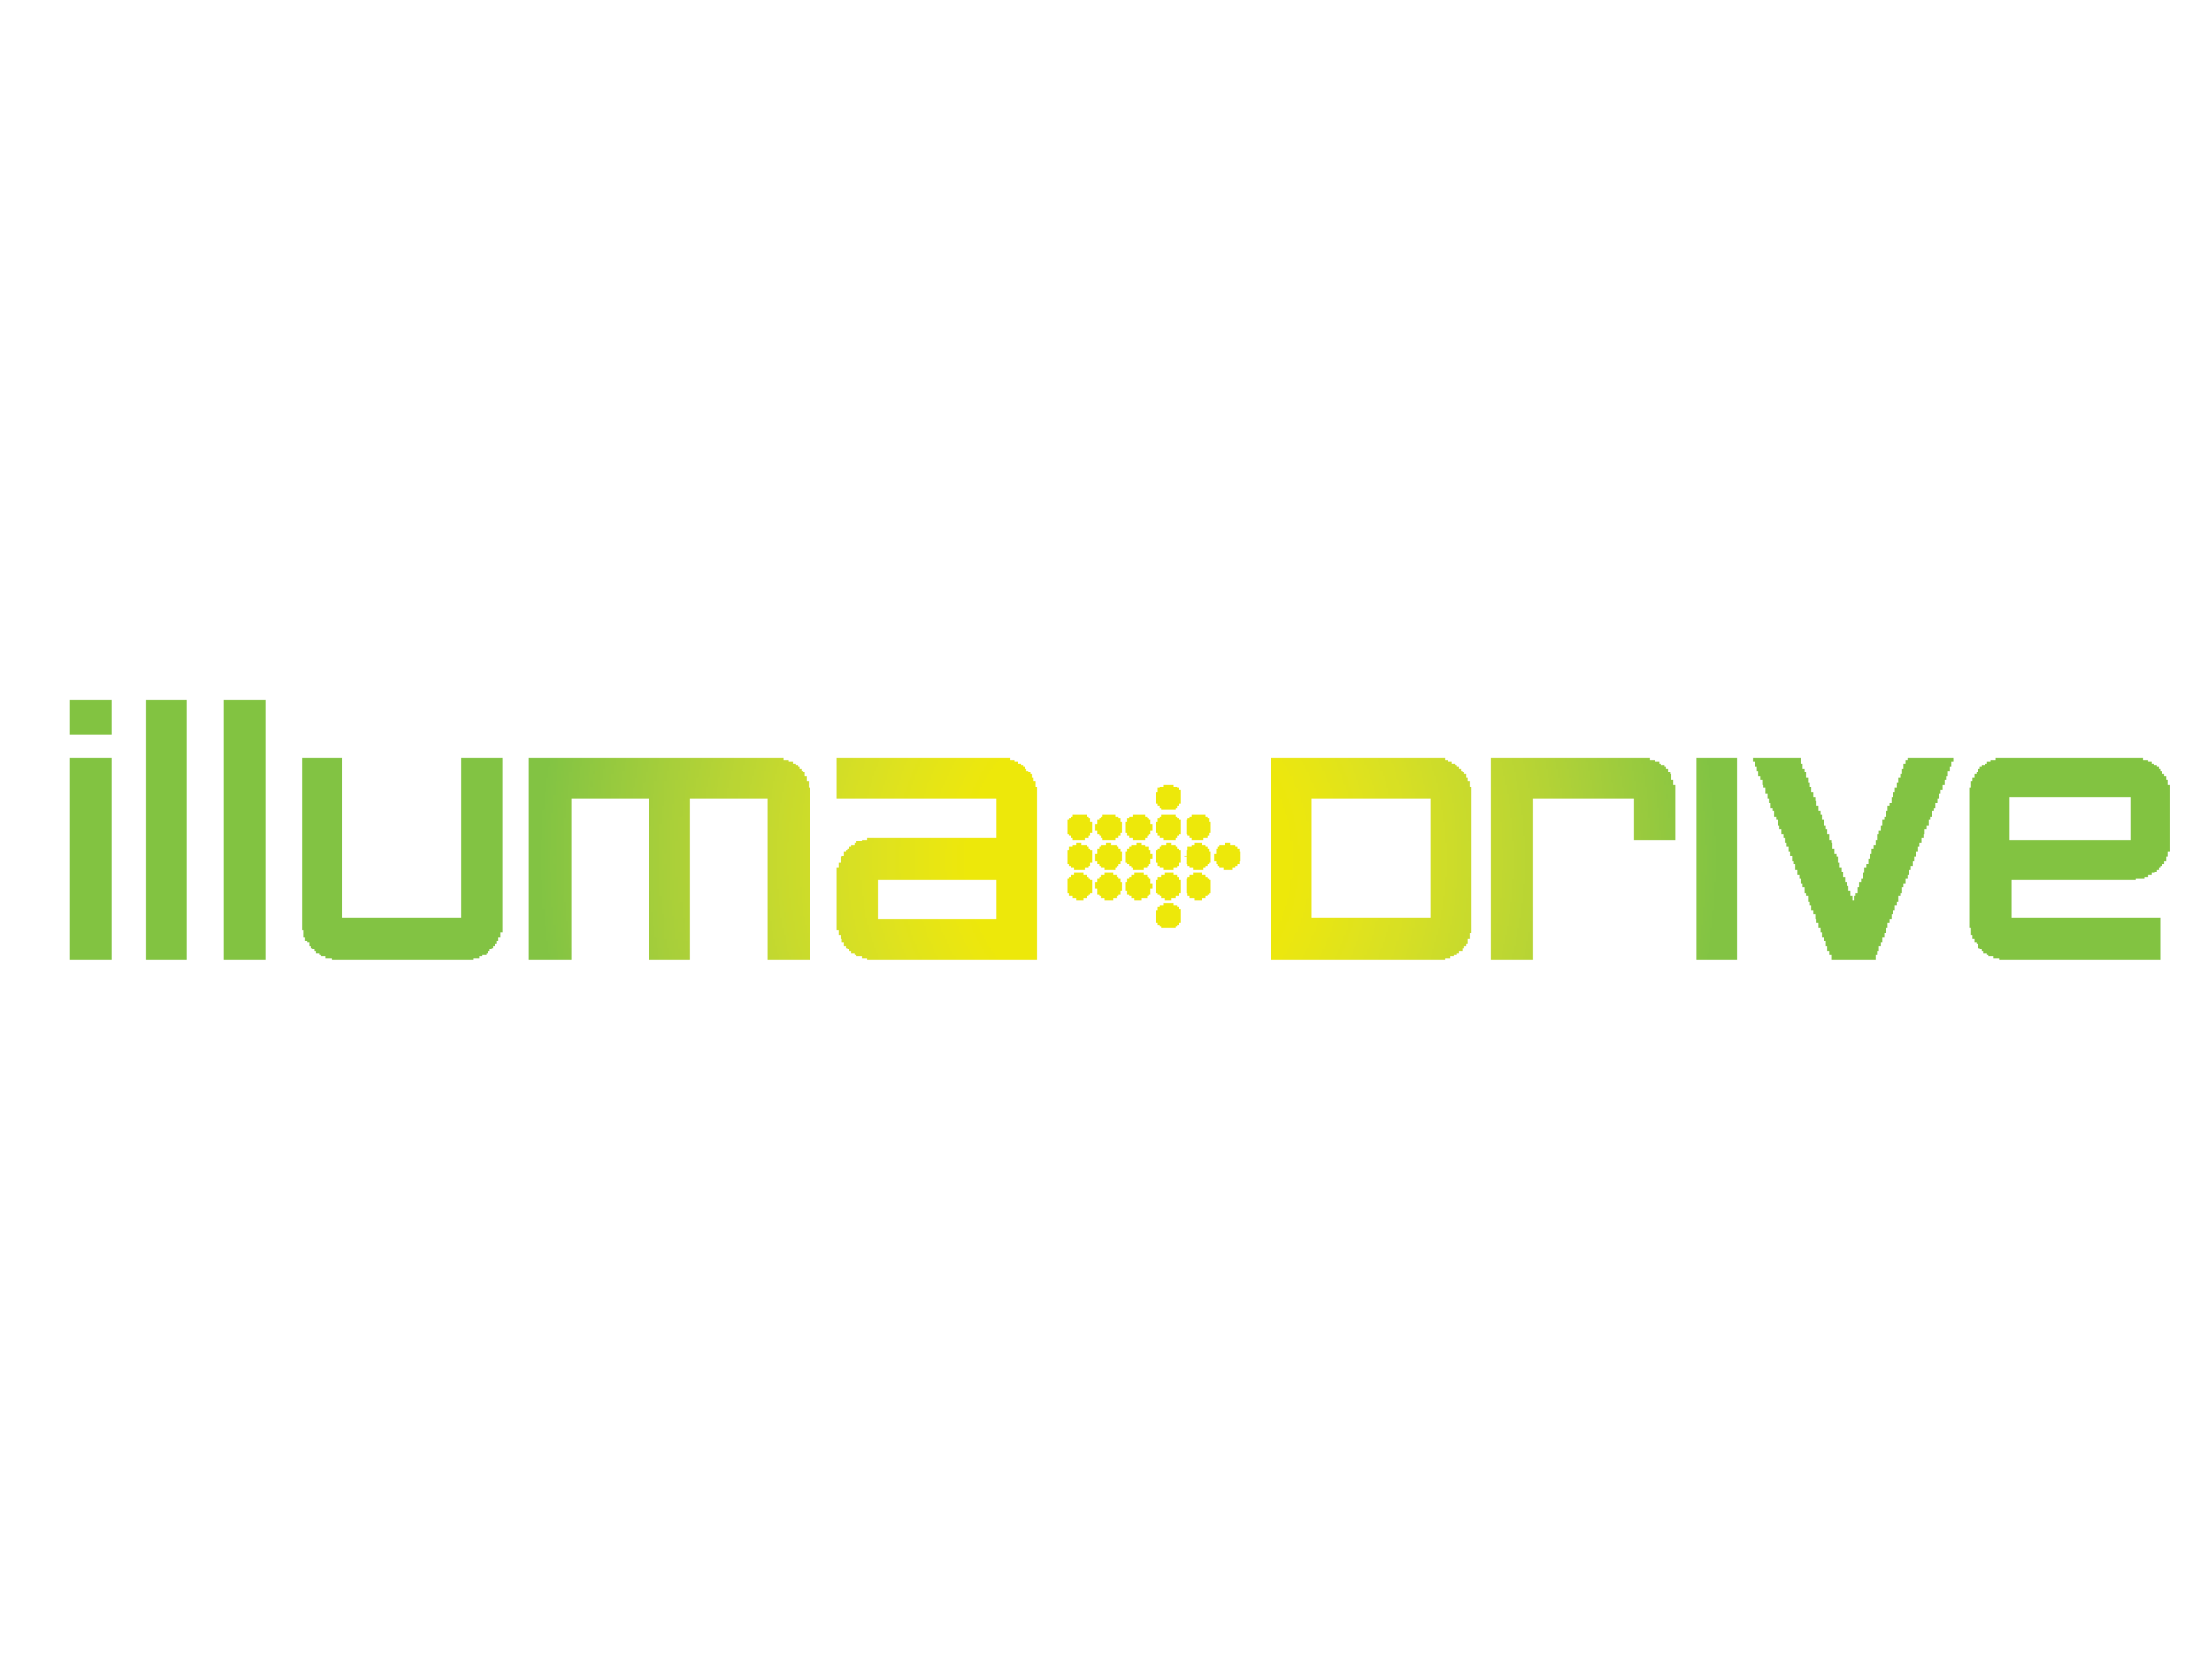 iLLUMA-Drive